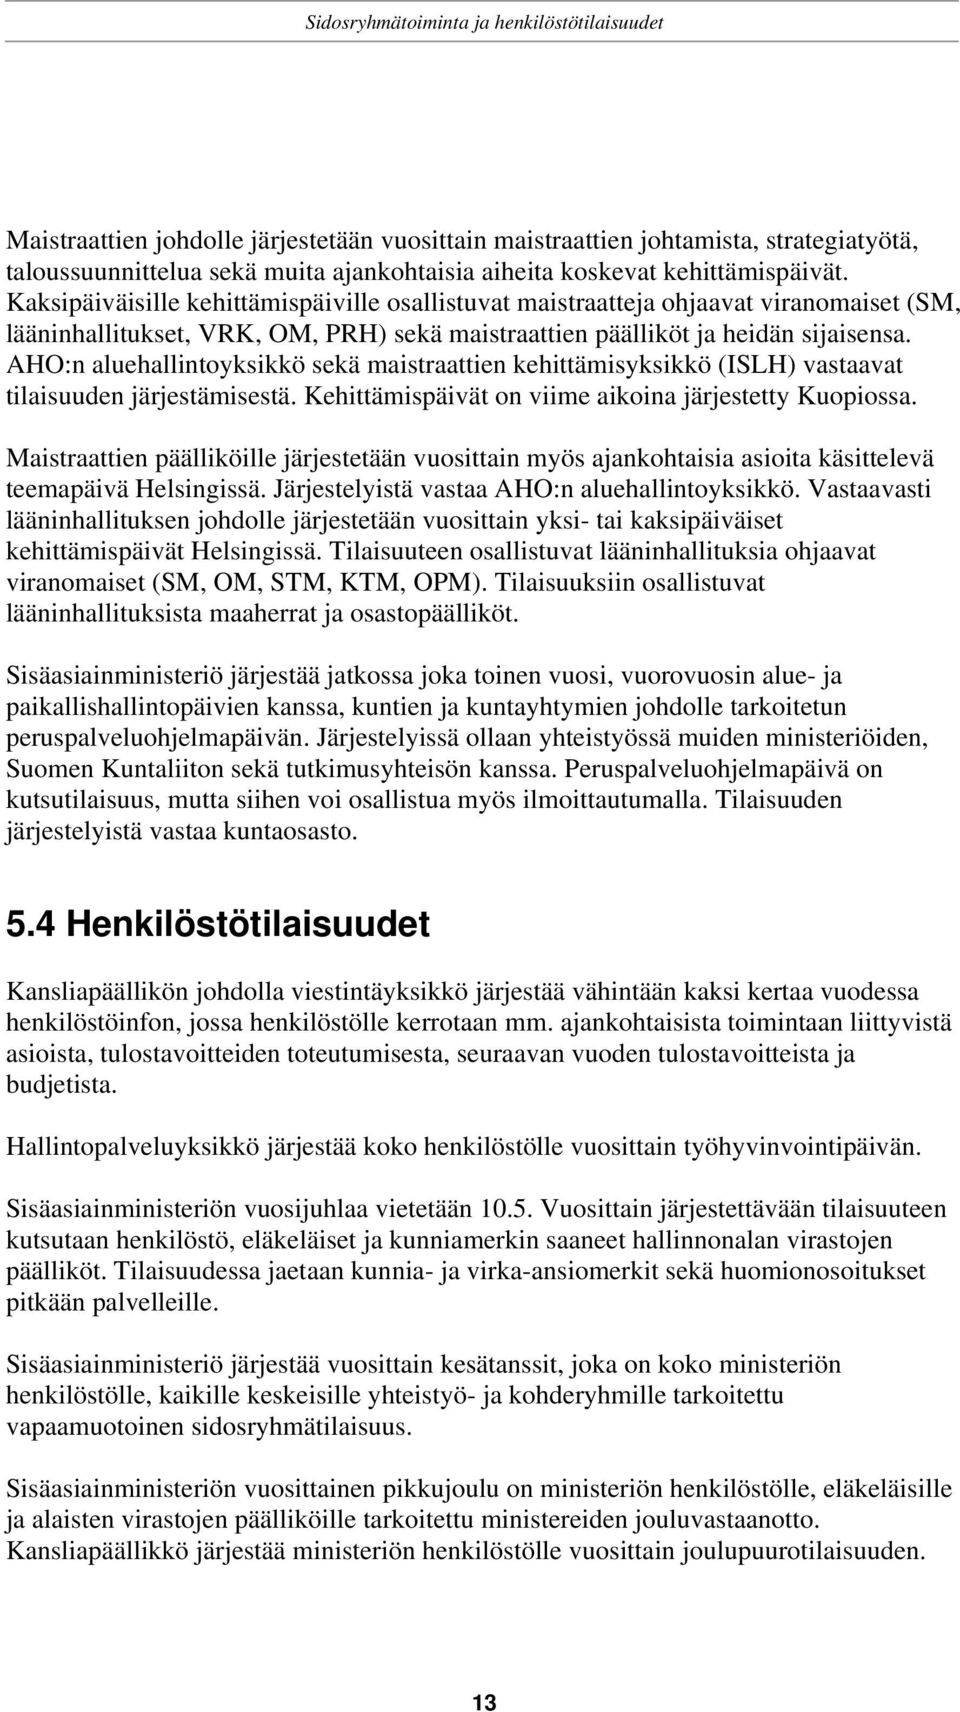 AHO:n aluehallintoyksikkö sekä maistraattien kehittämisyksikkö (ISLH) vastaavat tilaisuuden järjestämisestä. Kehittämispäivät on viime aikoina järjestetty Kuopiossa.